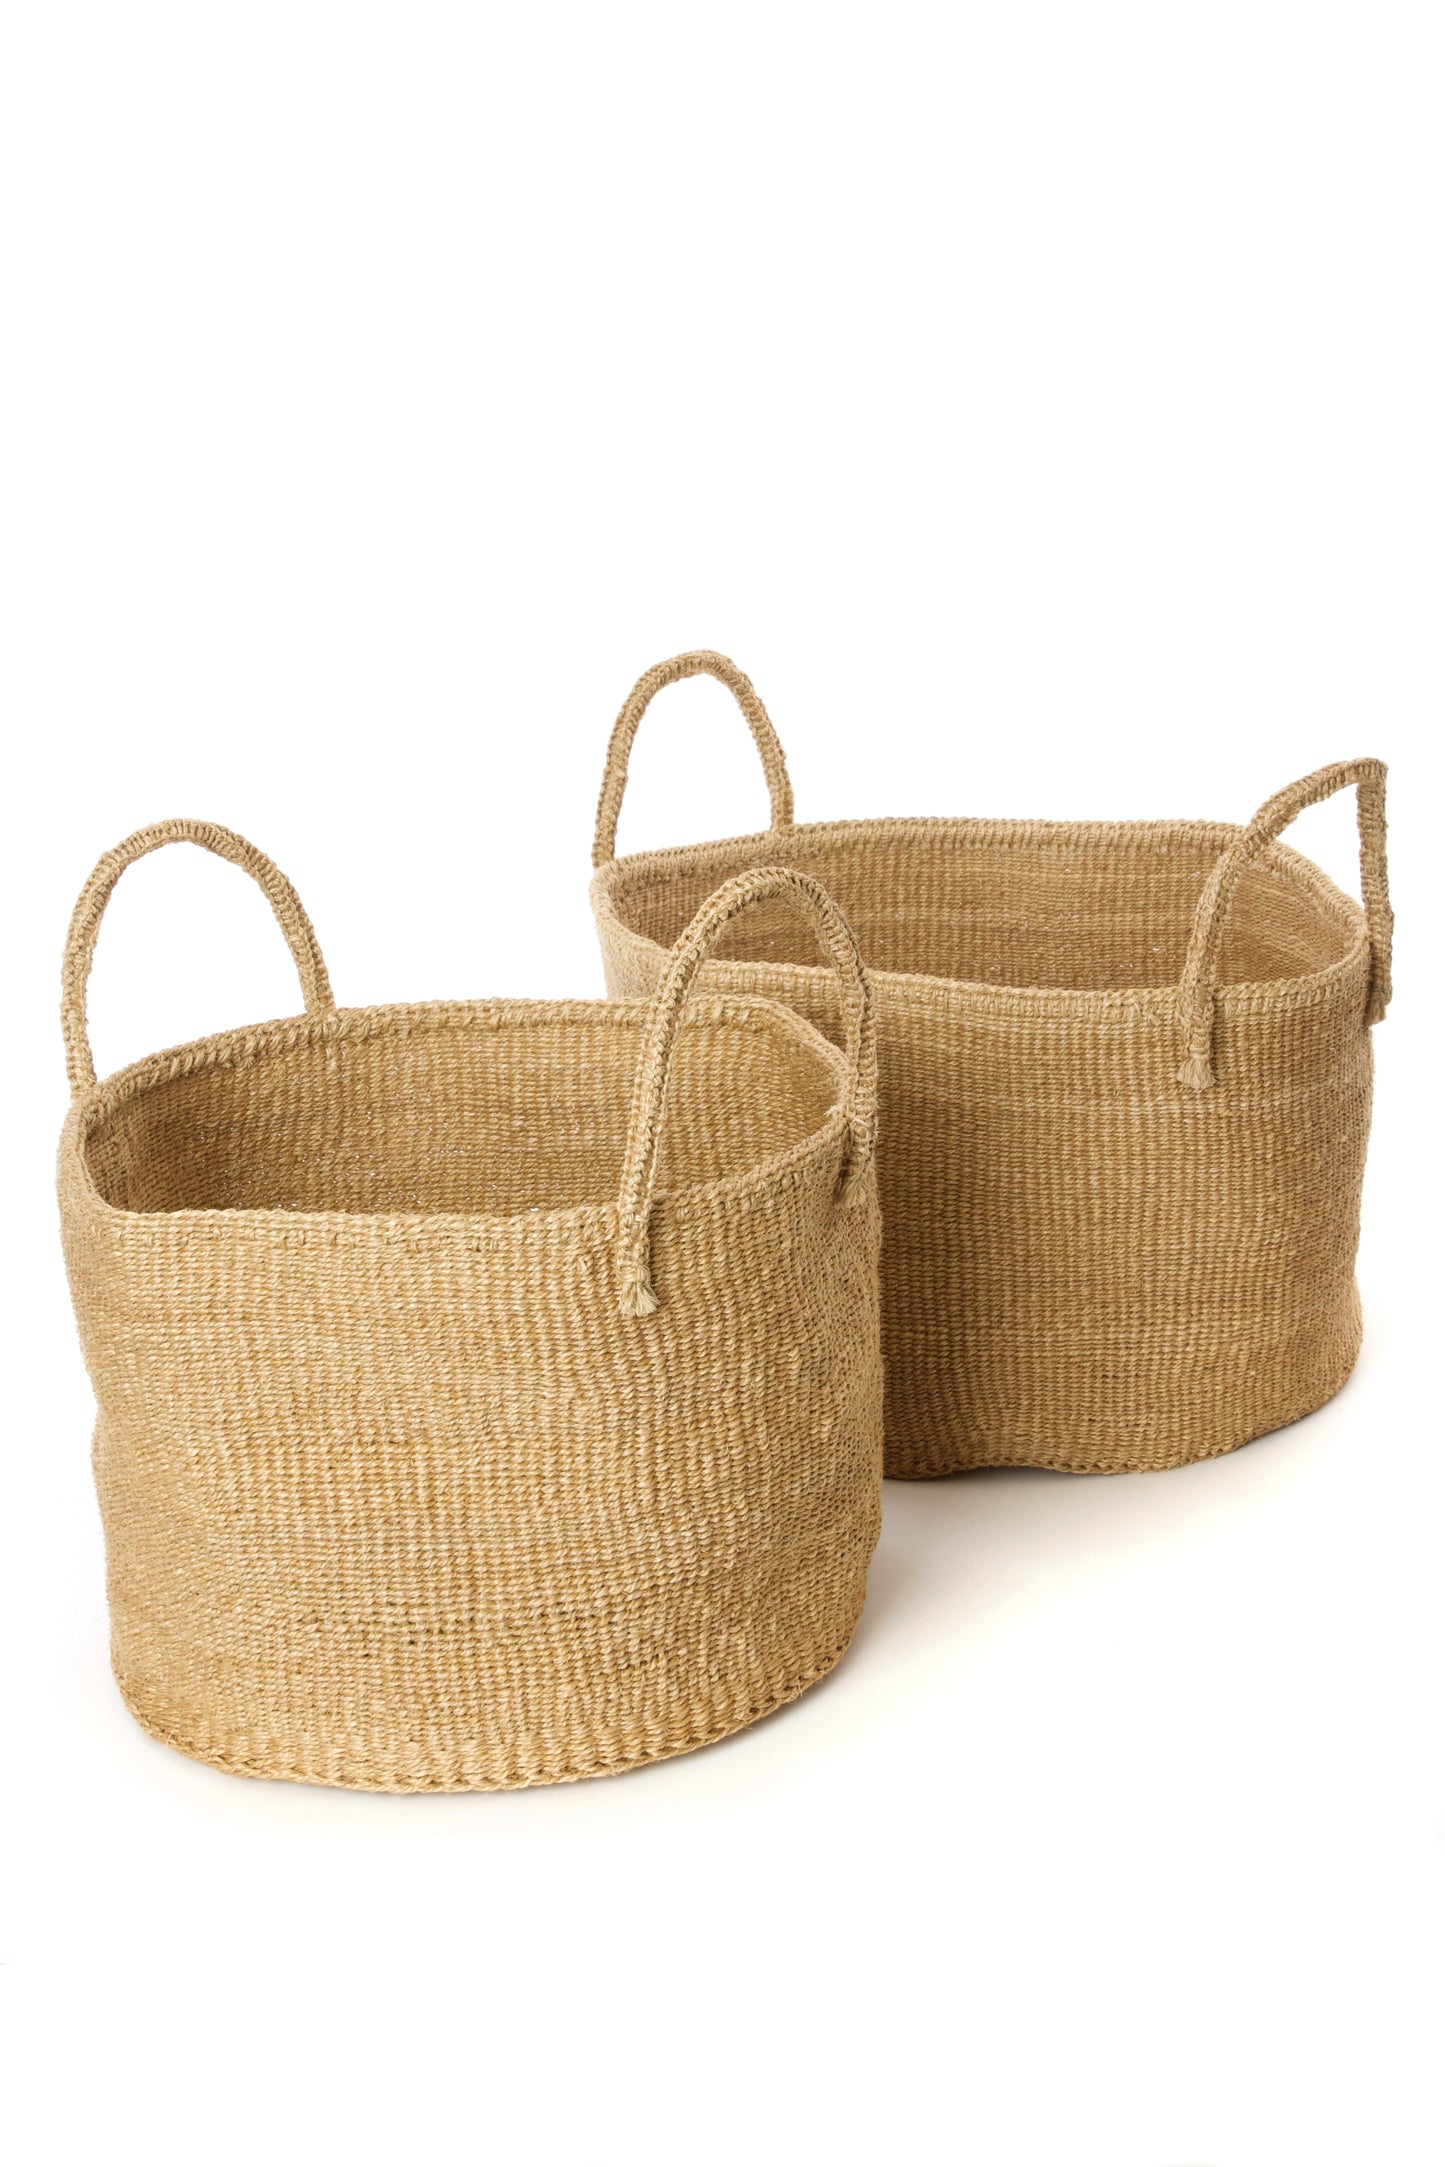 Large Floor Basket (1) for Storage - Sand